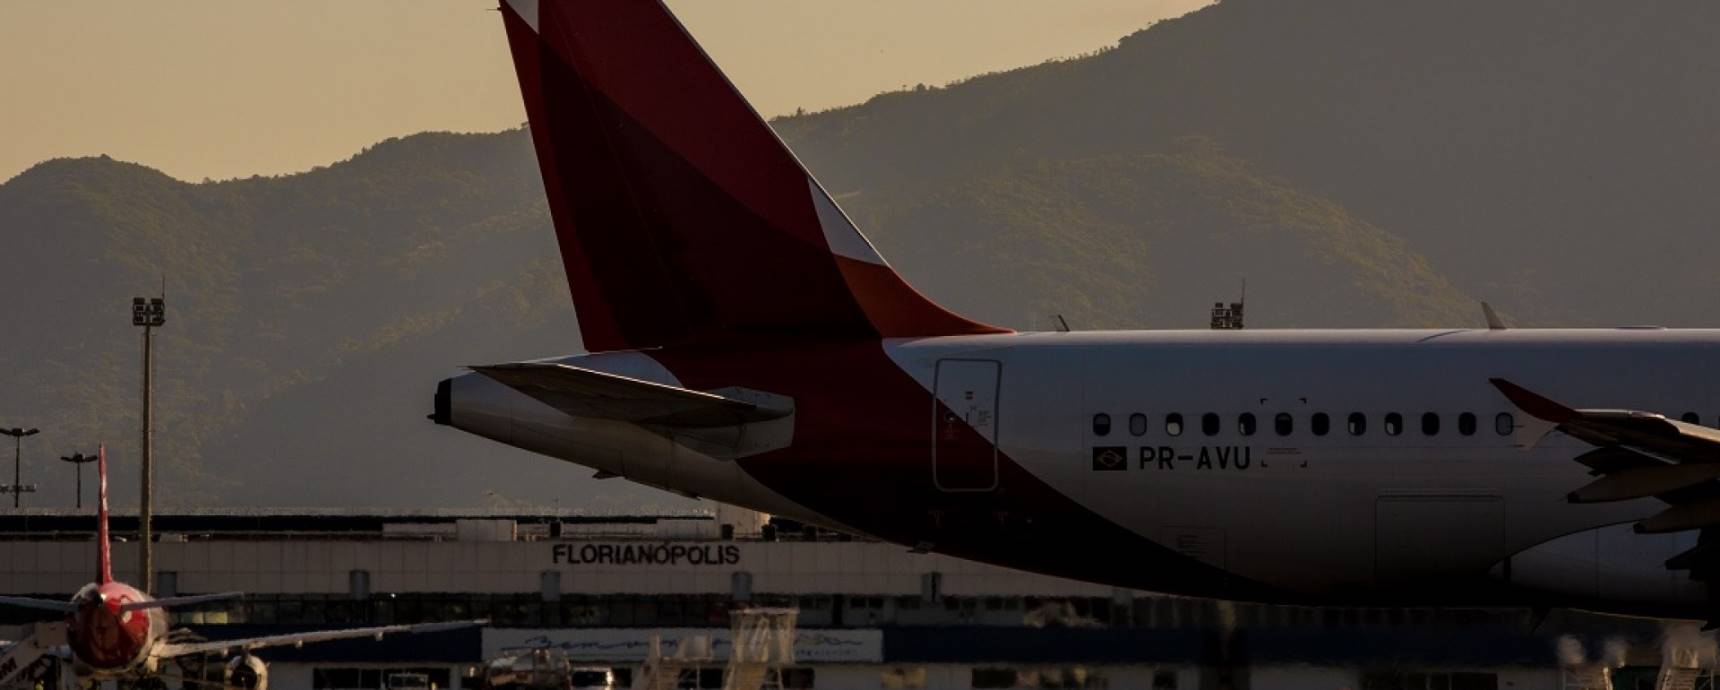 Floripa Airport completa 100 dias de operação à frente do aeroporto de Florianópolis. Veja o que já foi feito: